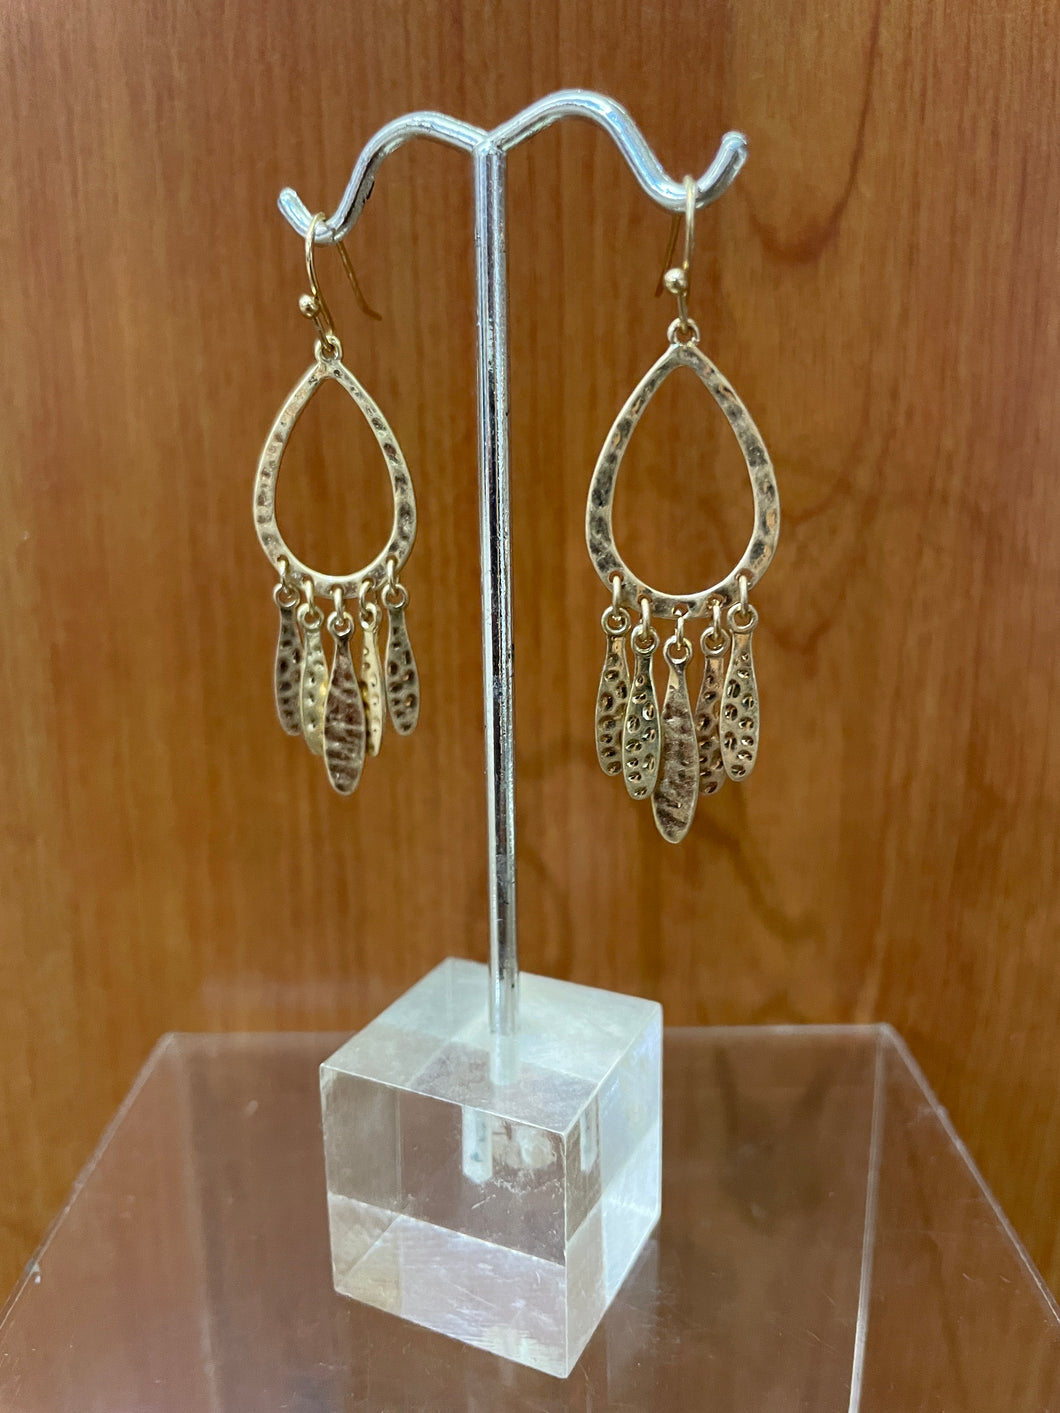 Gold Drops Earrings